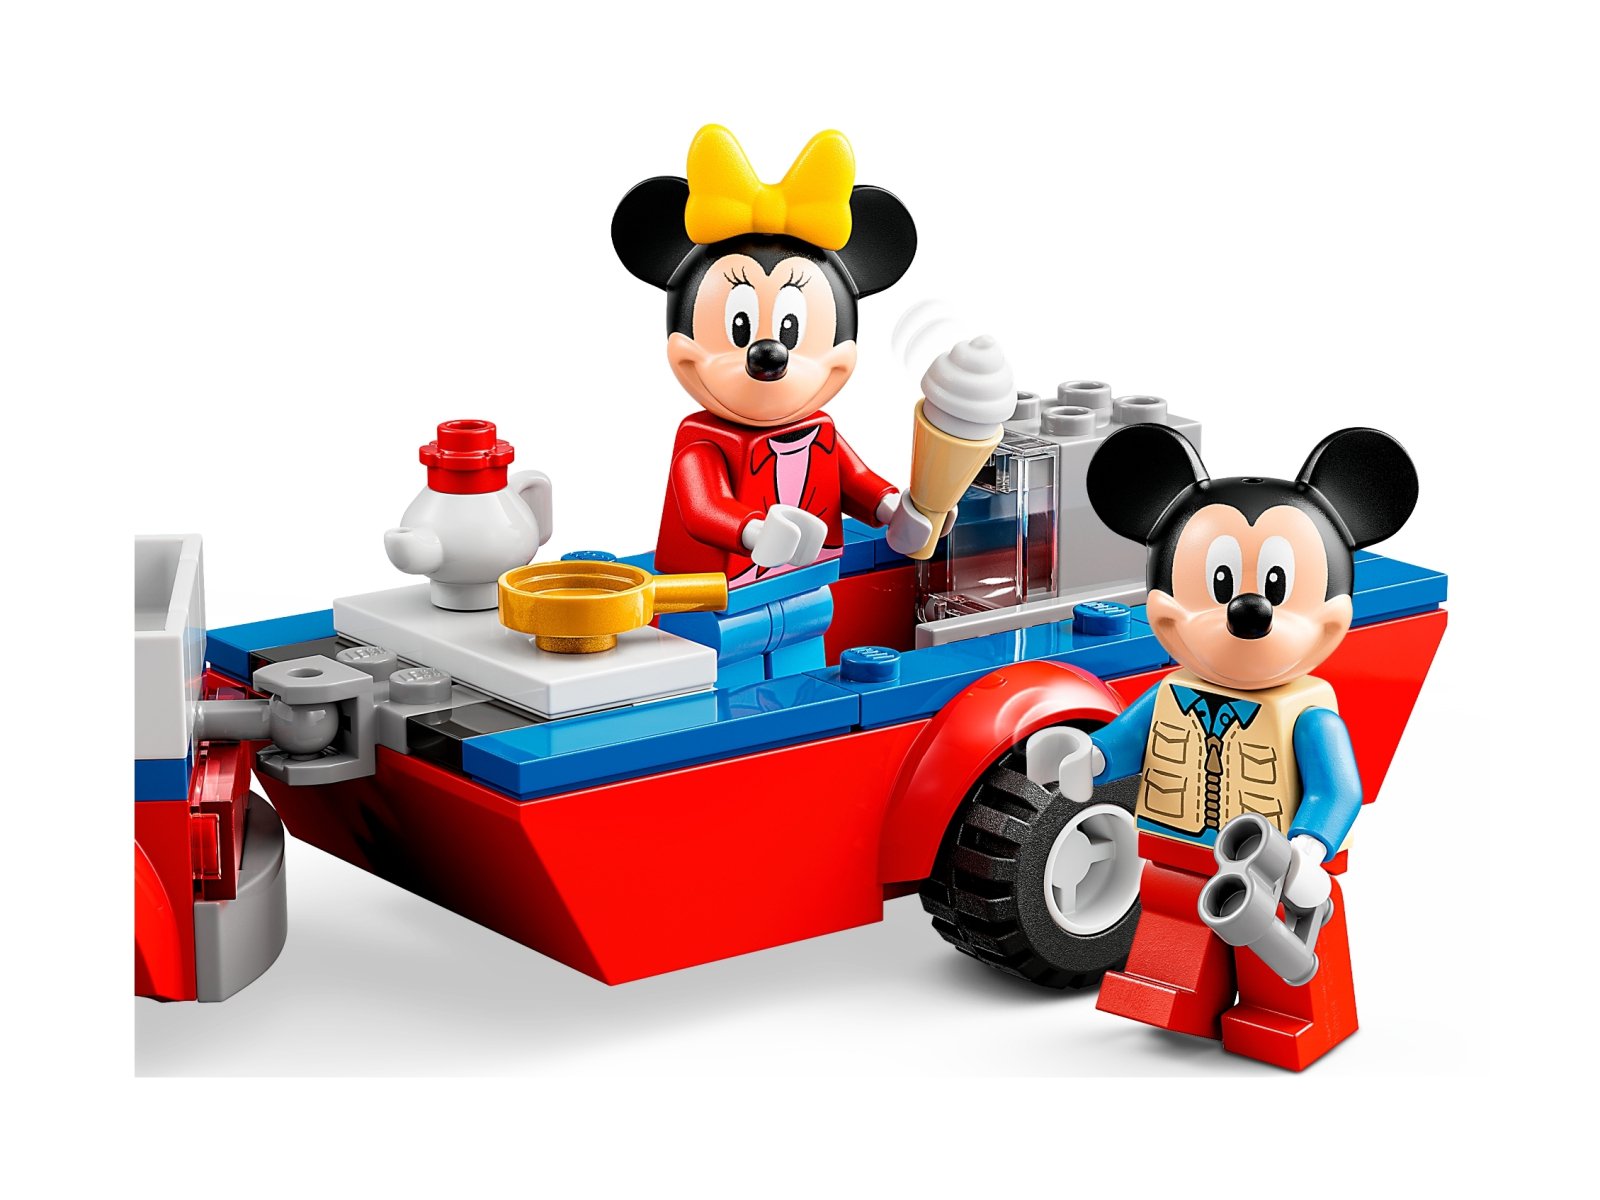 LEGO Disney 10777 Myszka Miki i Myszka Minnie na biwaku